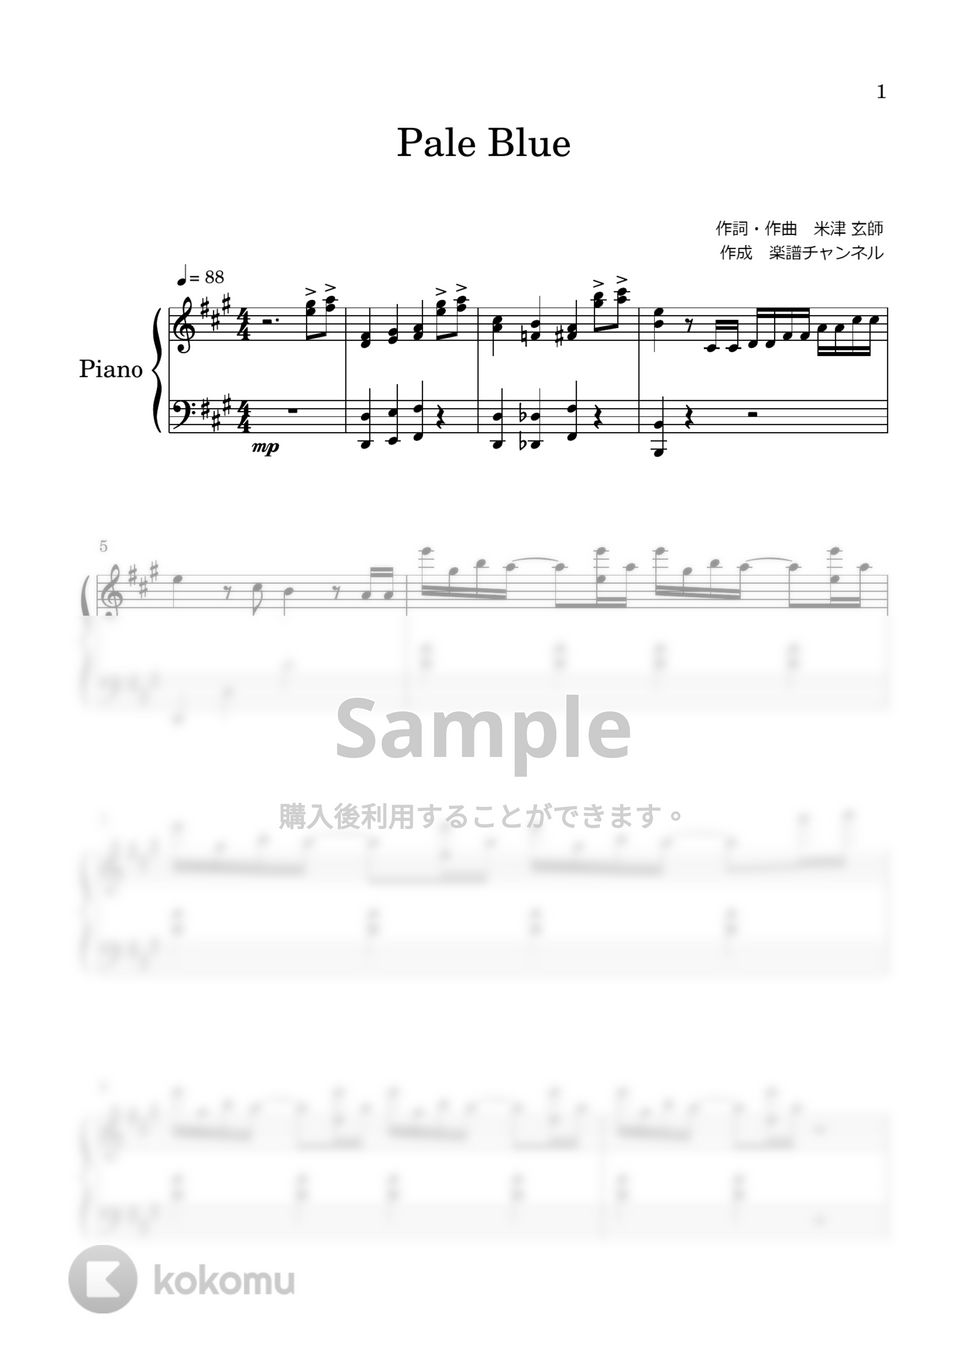 米津玄師 - Pale Blue by 楽譜チャンネル